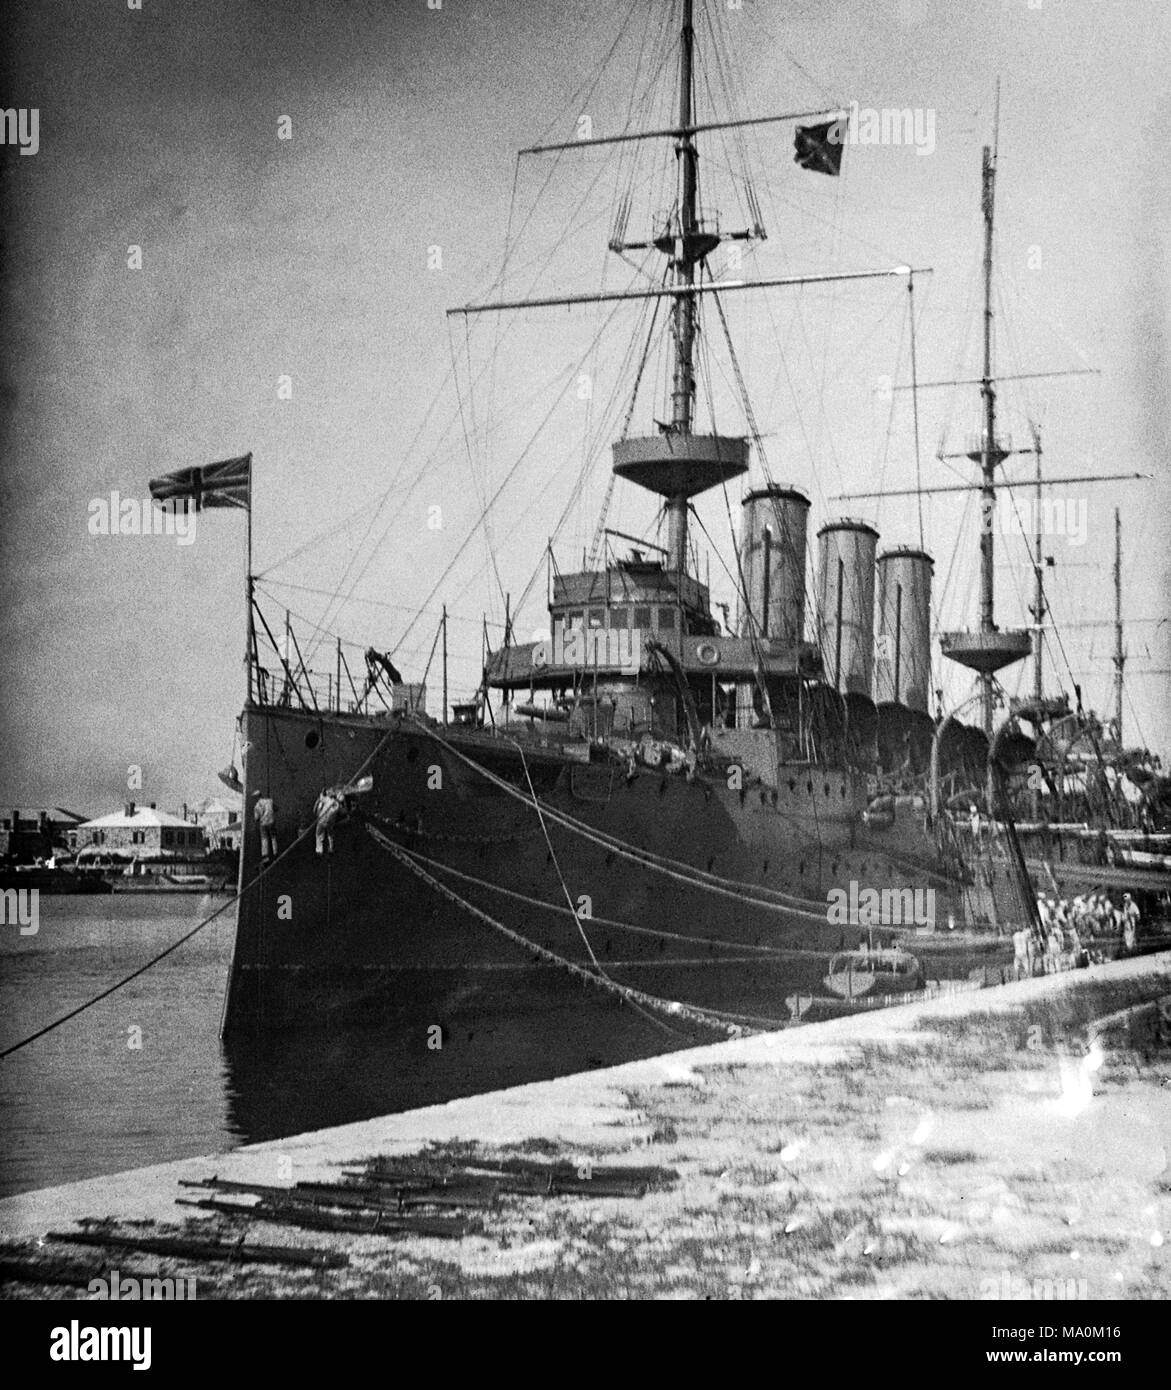 AJAXNETPHOTO. 1913 (environ). WEST INDIES, BRMUDA. (Peut-être). La marine britannique ARMOURED CRUISER AMARRÉ AUX CÔTÉS PEUT-ÊTRE SUR LES ANTILLES. Bateau était un croiseur blindé de la classe peut-être le HMS SUFFOLK. Deux membres d'équipage sur les aires de rassemblement sont la peinture de la proue du navire. Photographe:Inconnu © COPYRIGHT DE L'IMAGE NUMÉRIQUE PHOTO VINTAGE AJAX AJAX BIBLIOTHÈQUE SOURCE : VINTAGE PHOTO LIBRARY COLLECTION REF:182303 BTE4  06 Banque D'Images